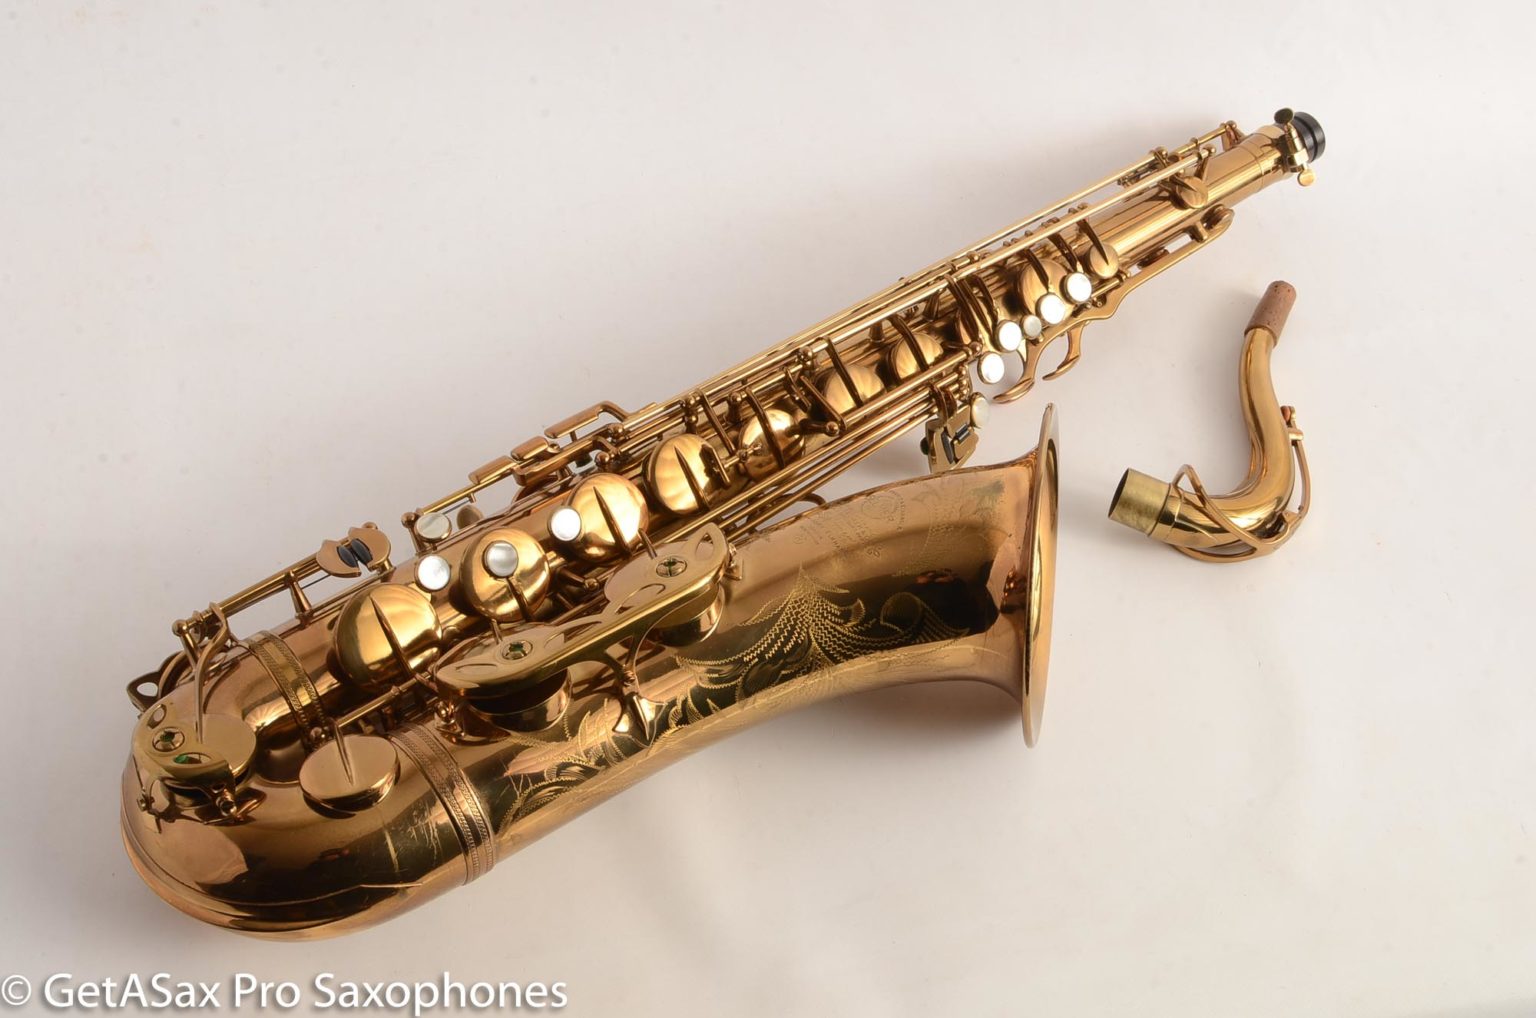 Selmer Mark Vi Tenor Saxophone 1957 69533 Original Lacquer Excellent Condition